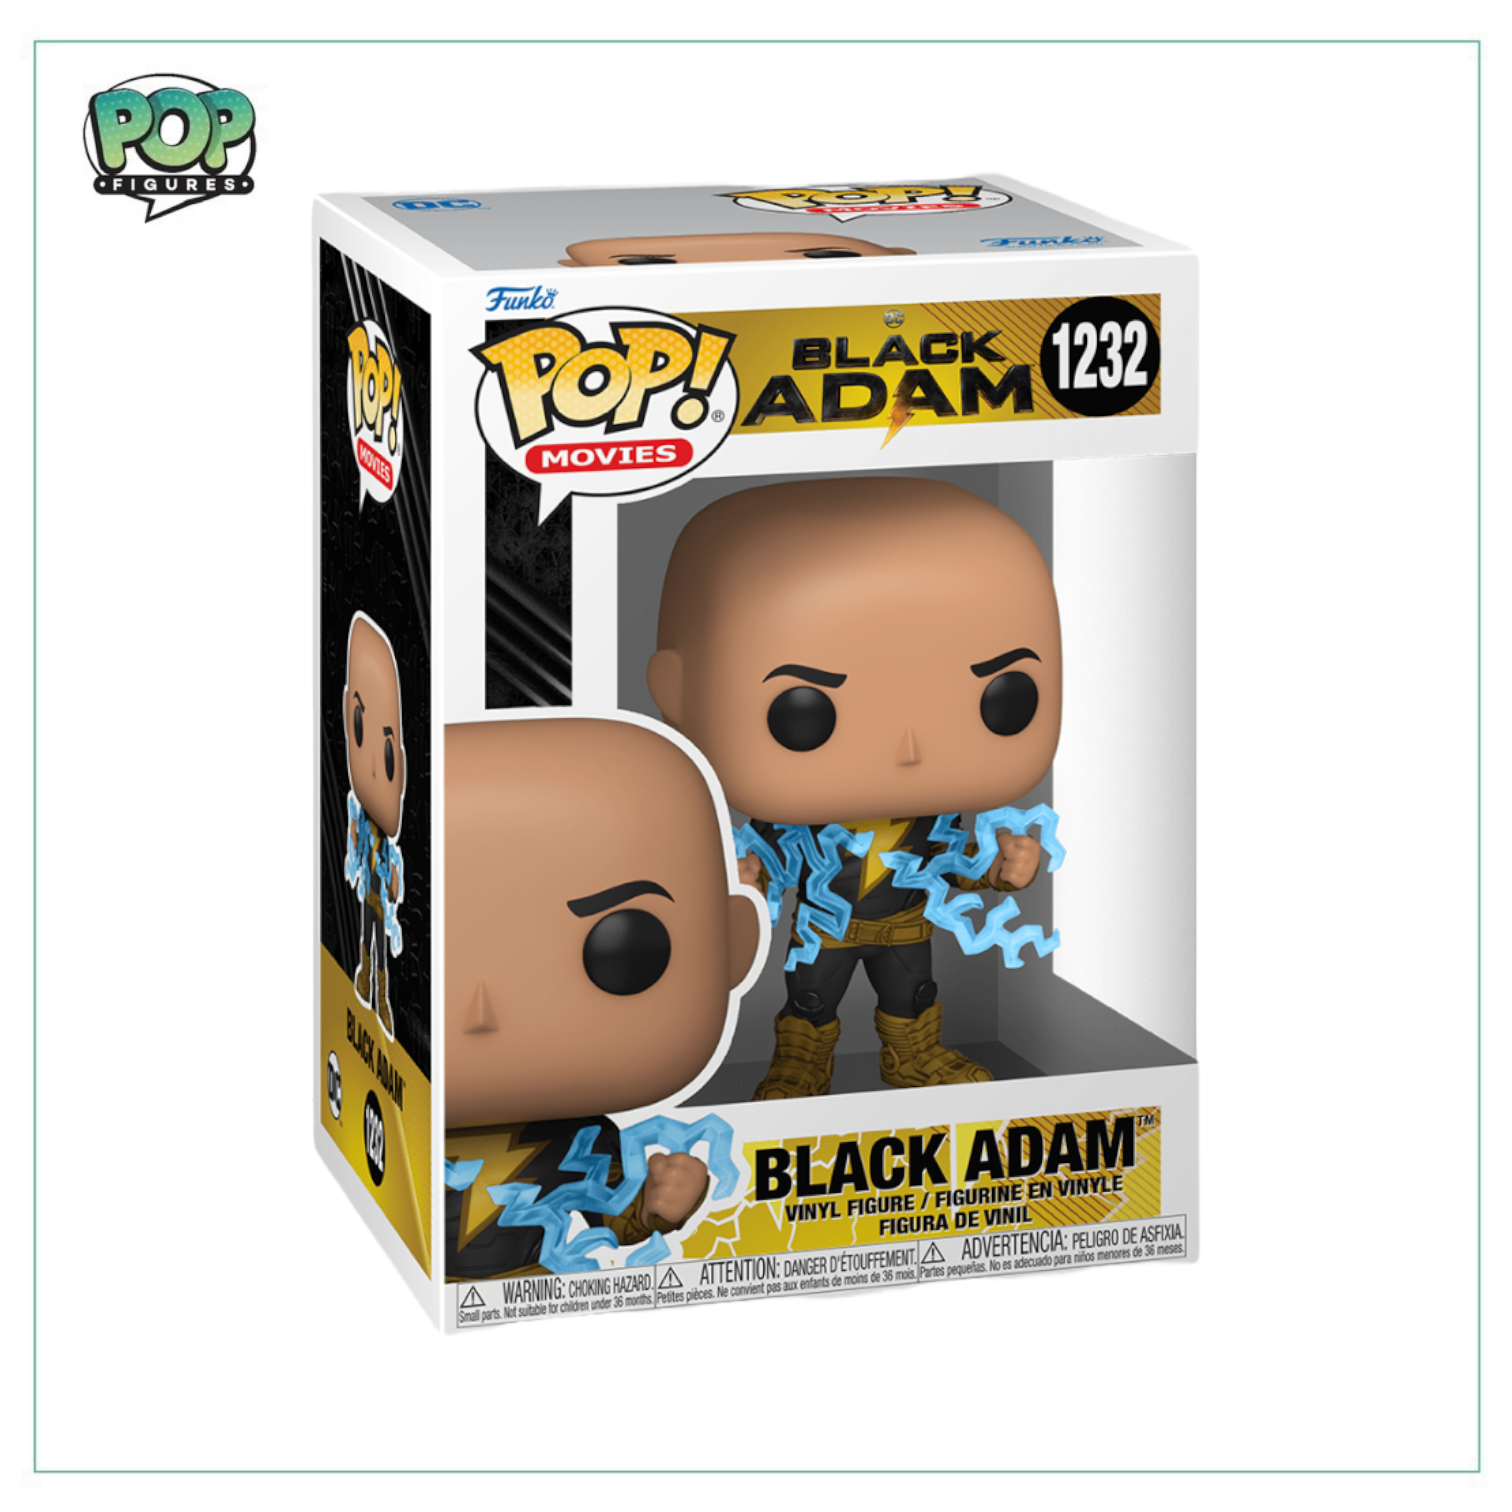 Black Adam #1232 Funko Pop! Black Adam